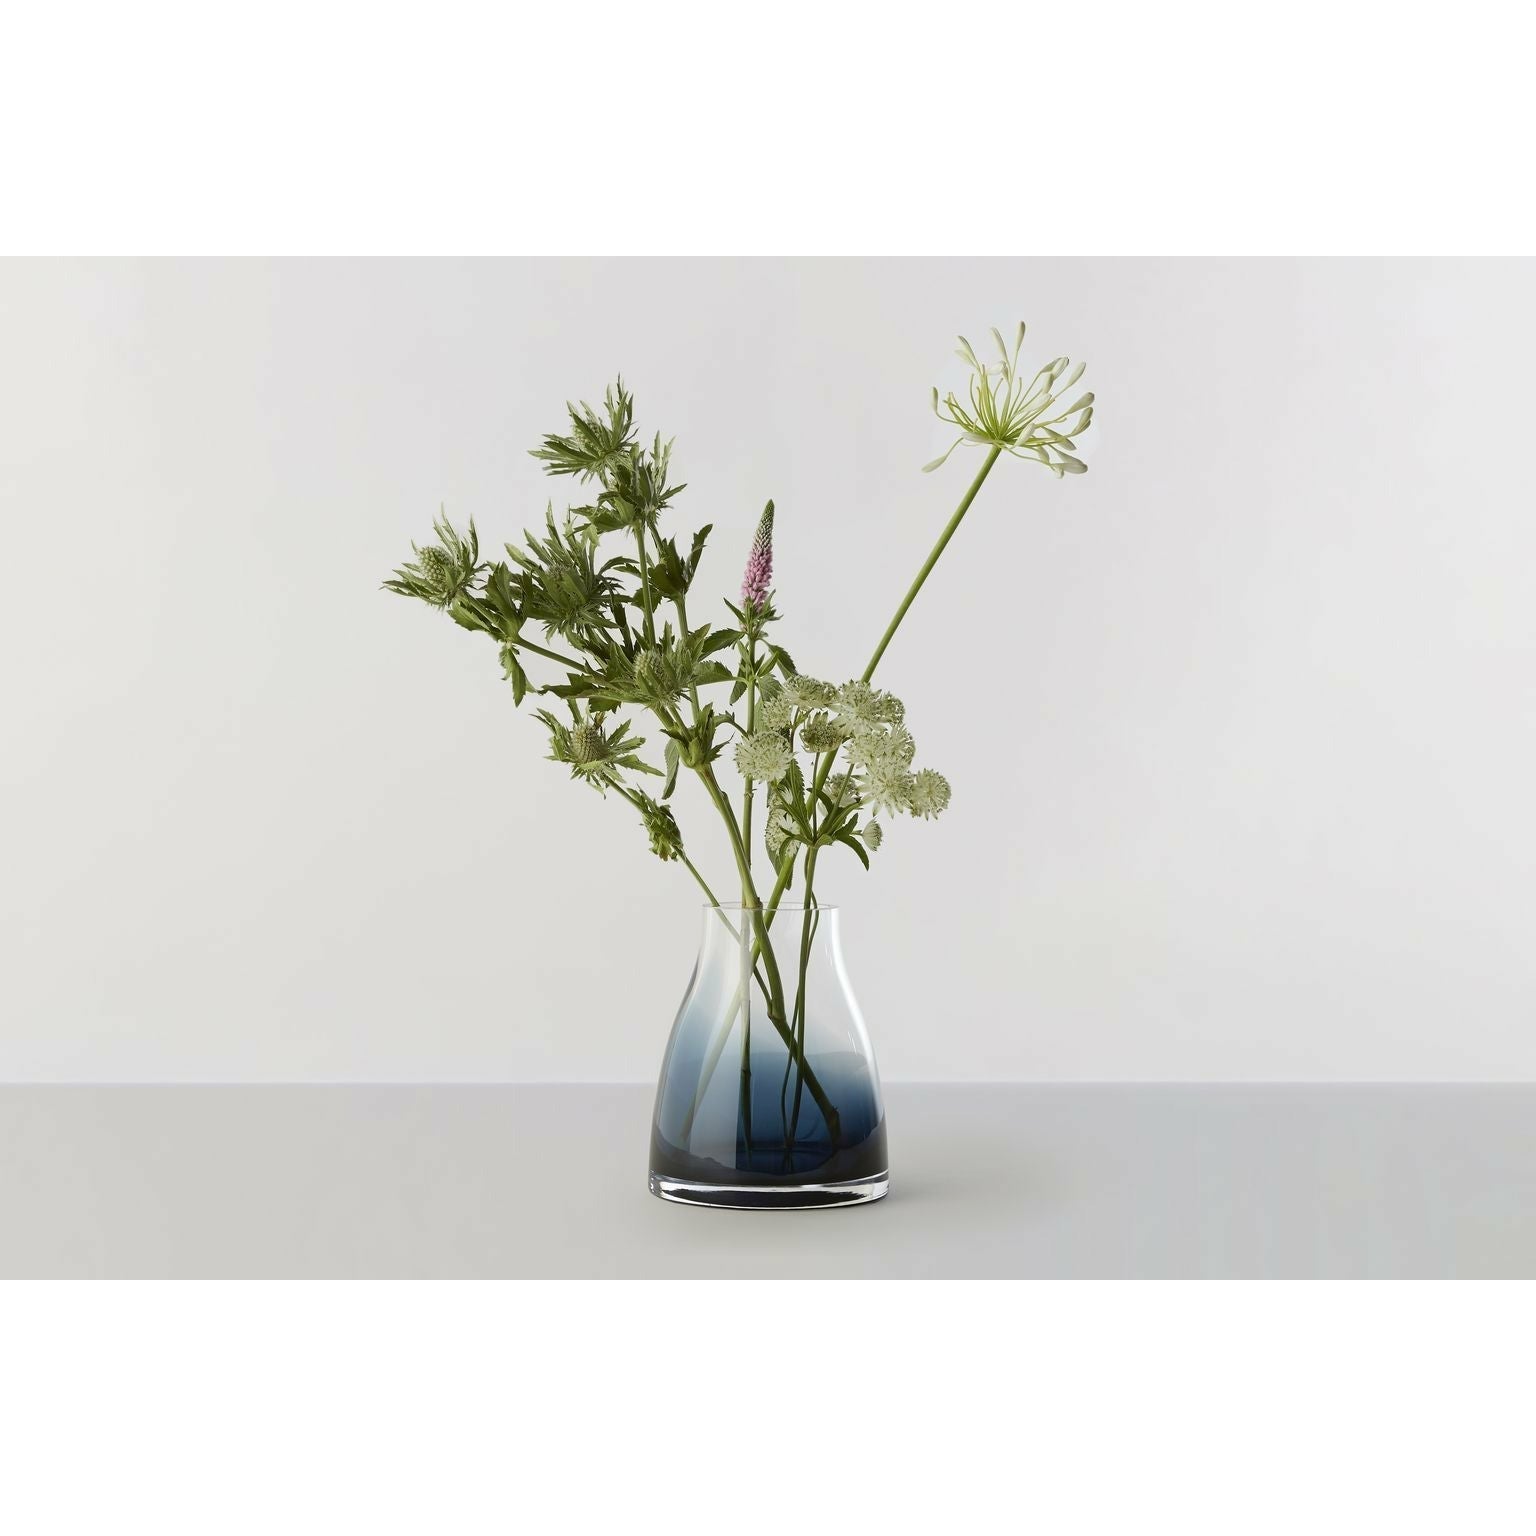 RO COLECCIÓN No. 2 Vase de flores øxh 15 x18, índigo azul